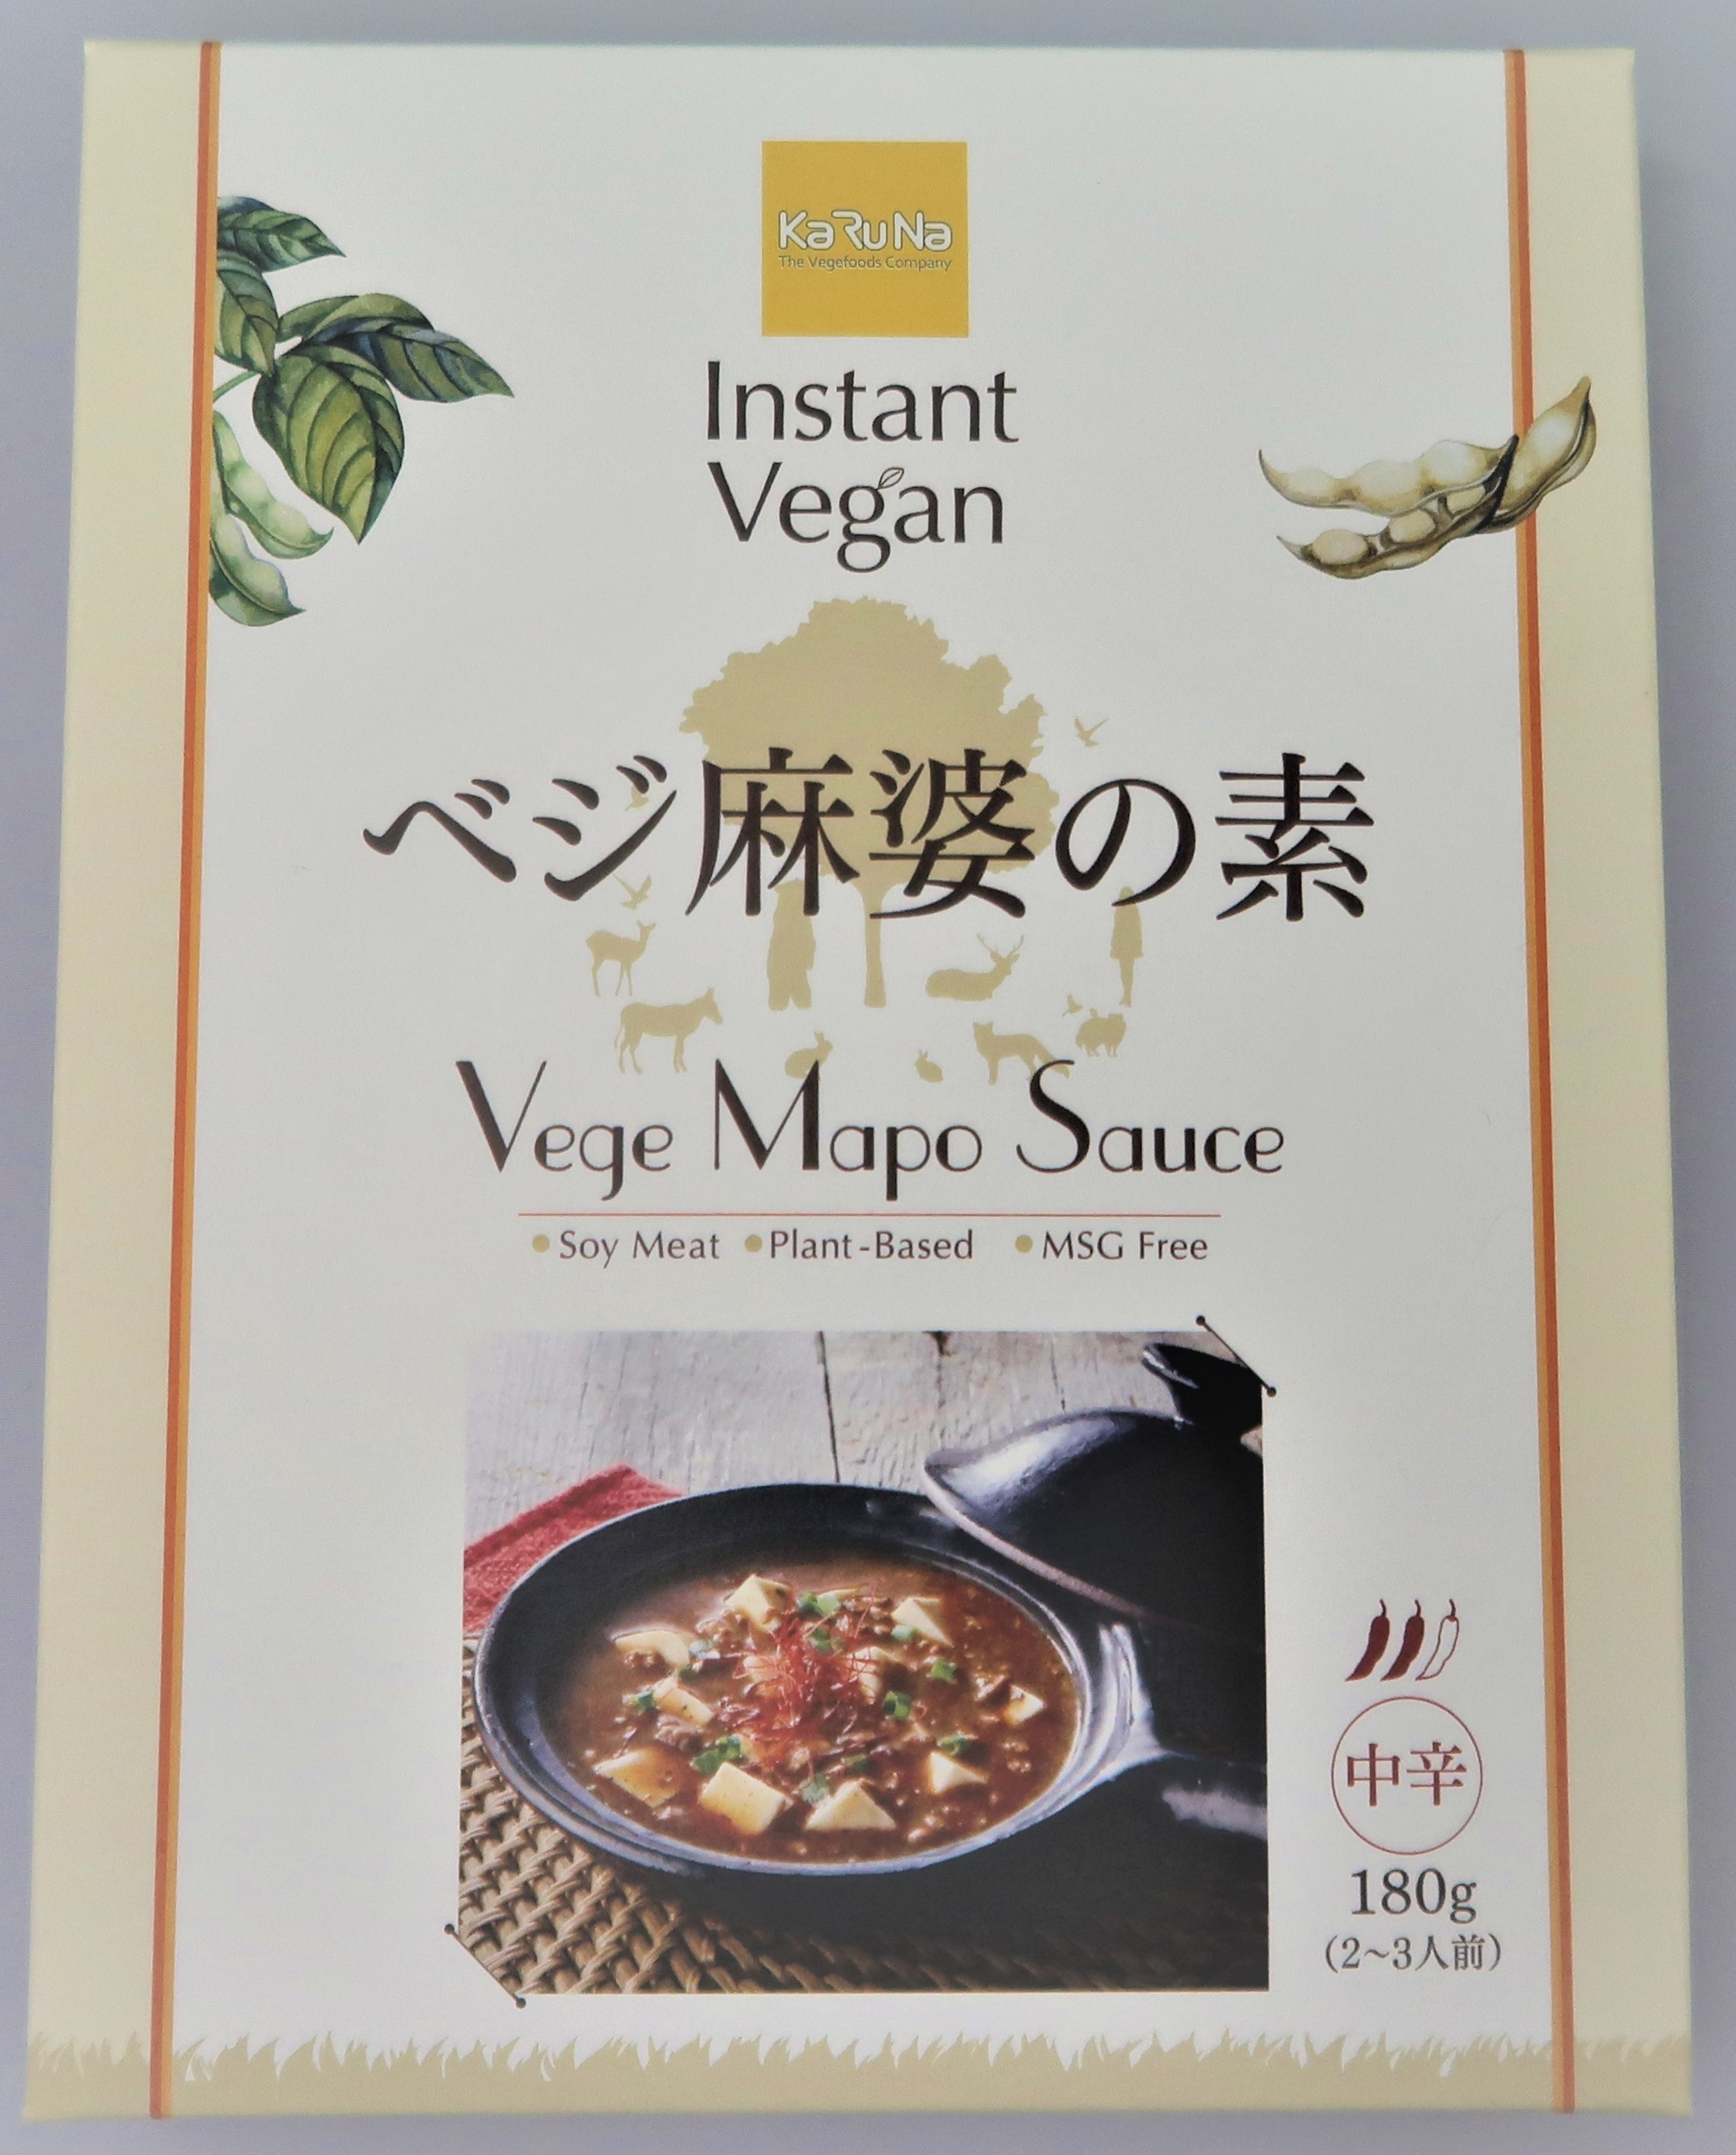 インスタントヴィーガンベジ麻婆の素(Instant Vegan Vege Mapo Sauce)